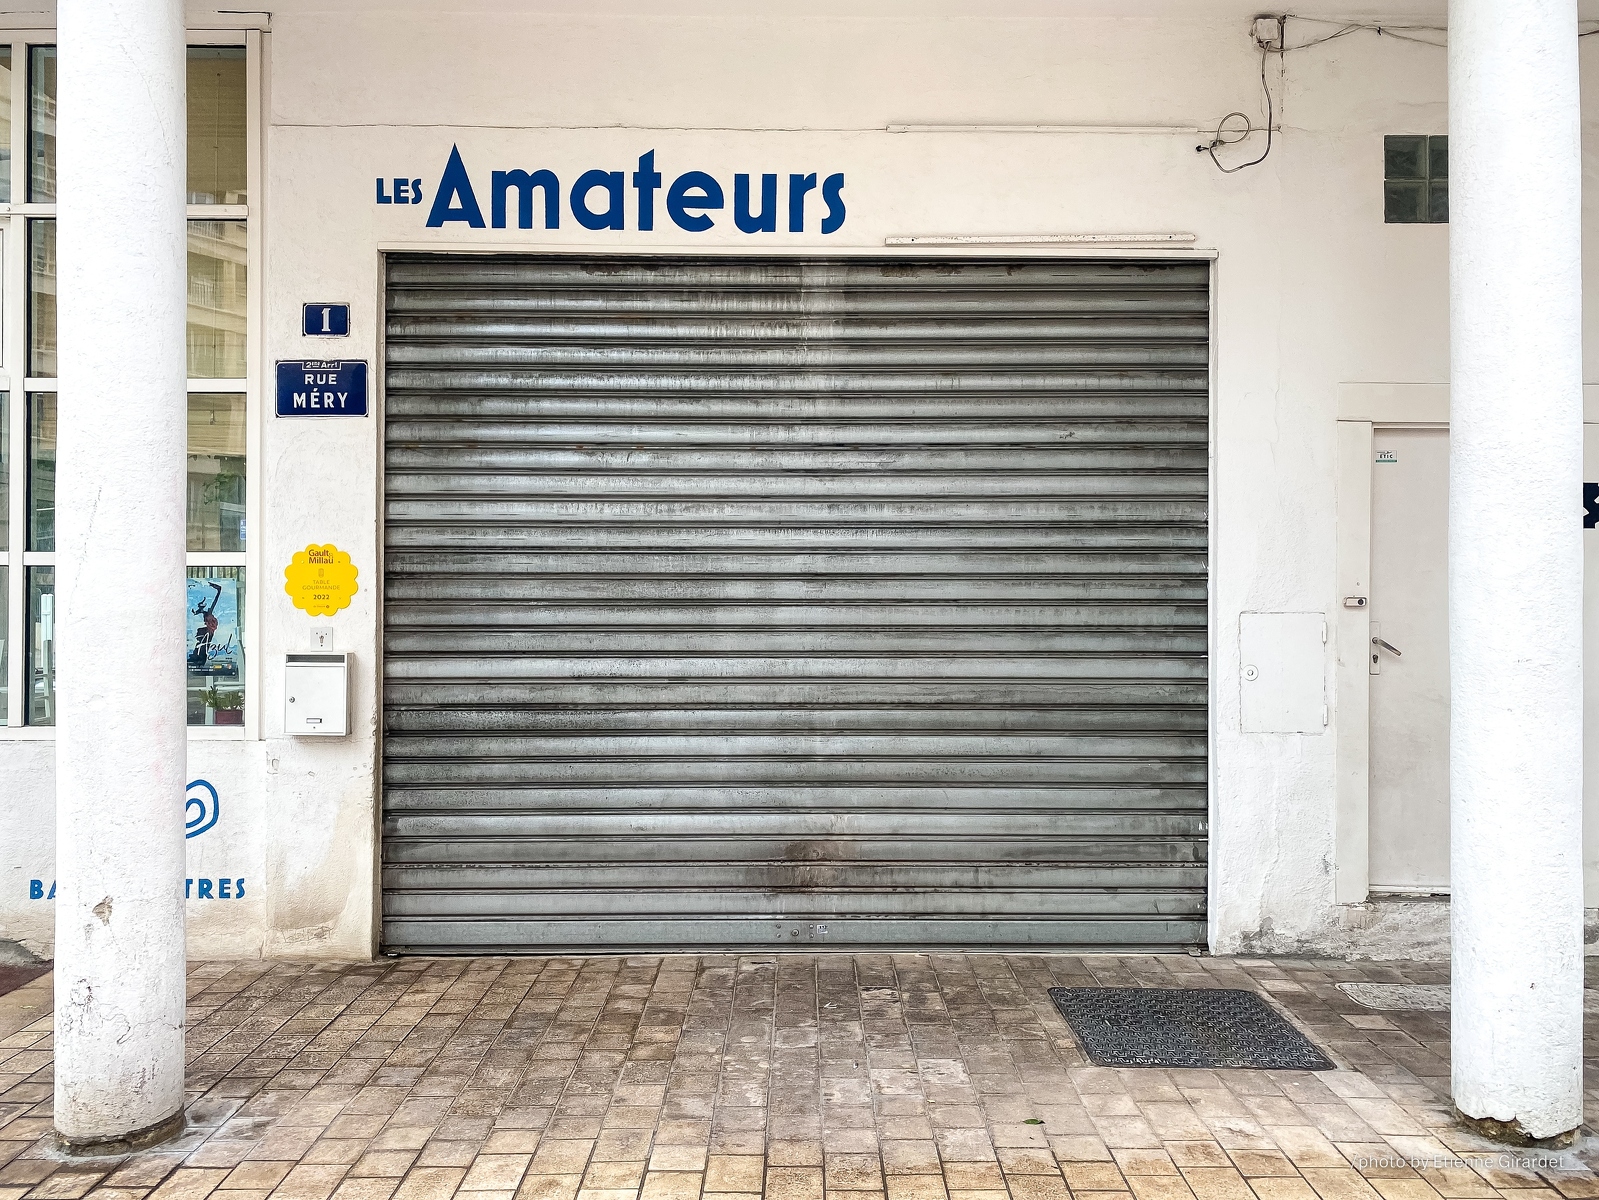 202204_24_IMG_1339-amateurs-closed_door-restaurant-by-E-Girardet.jpg